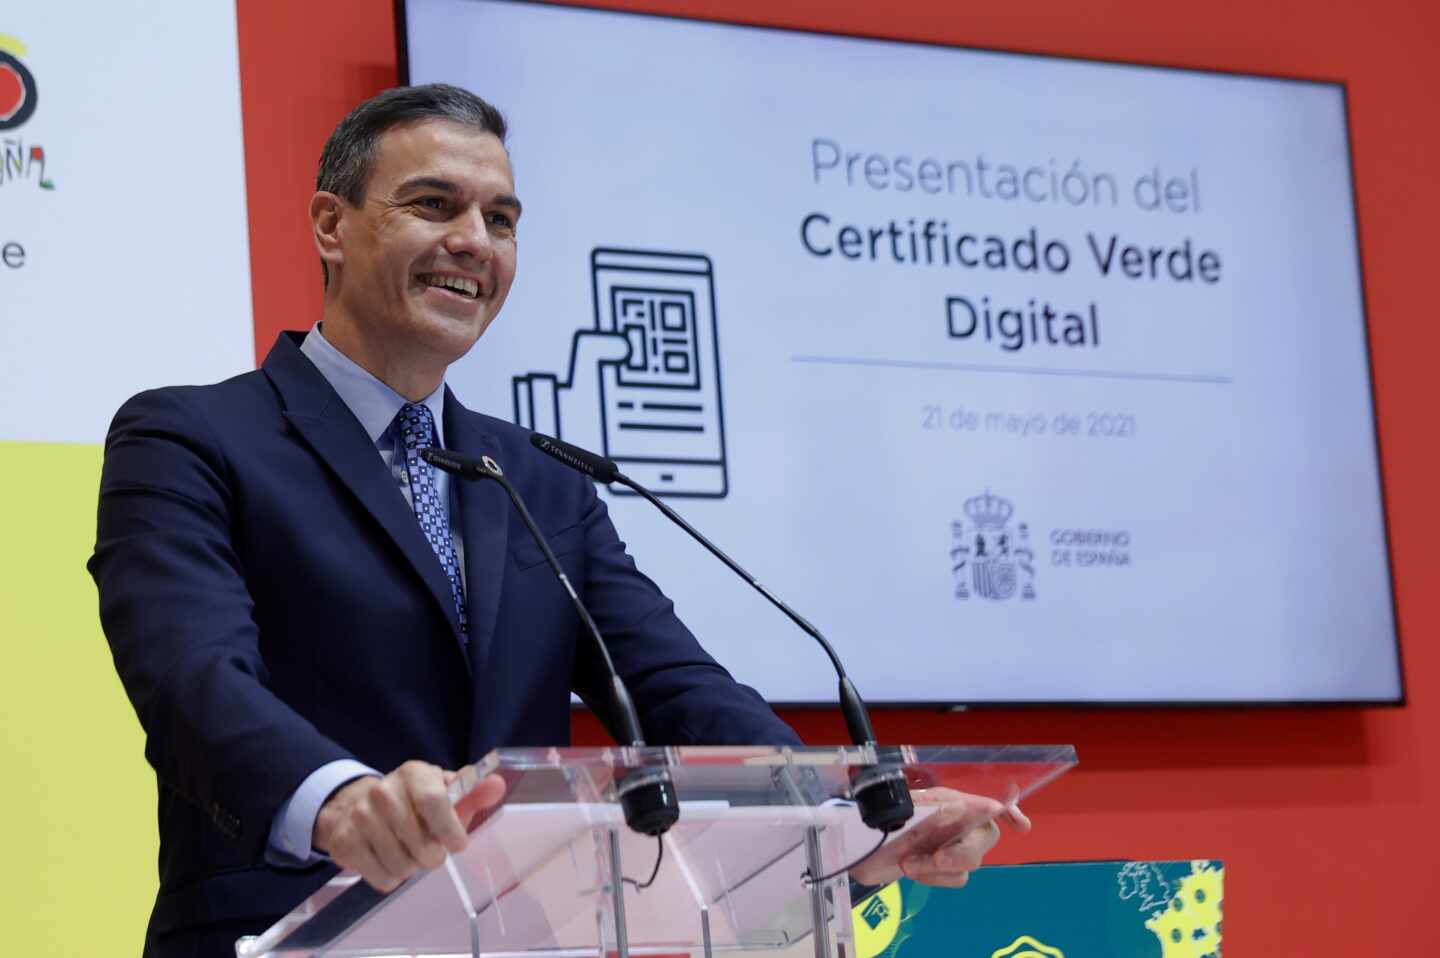 El presidente del Gobierno, Pedro Sánchez, pronuncia unas palabras durante la presentación del certificado verde digital